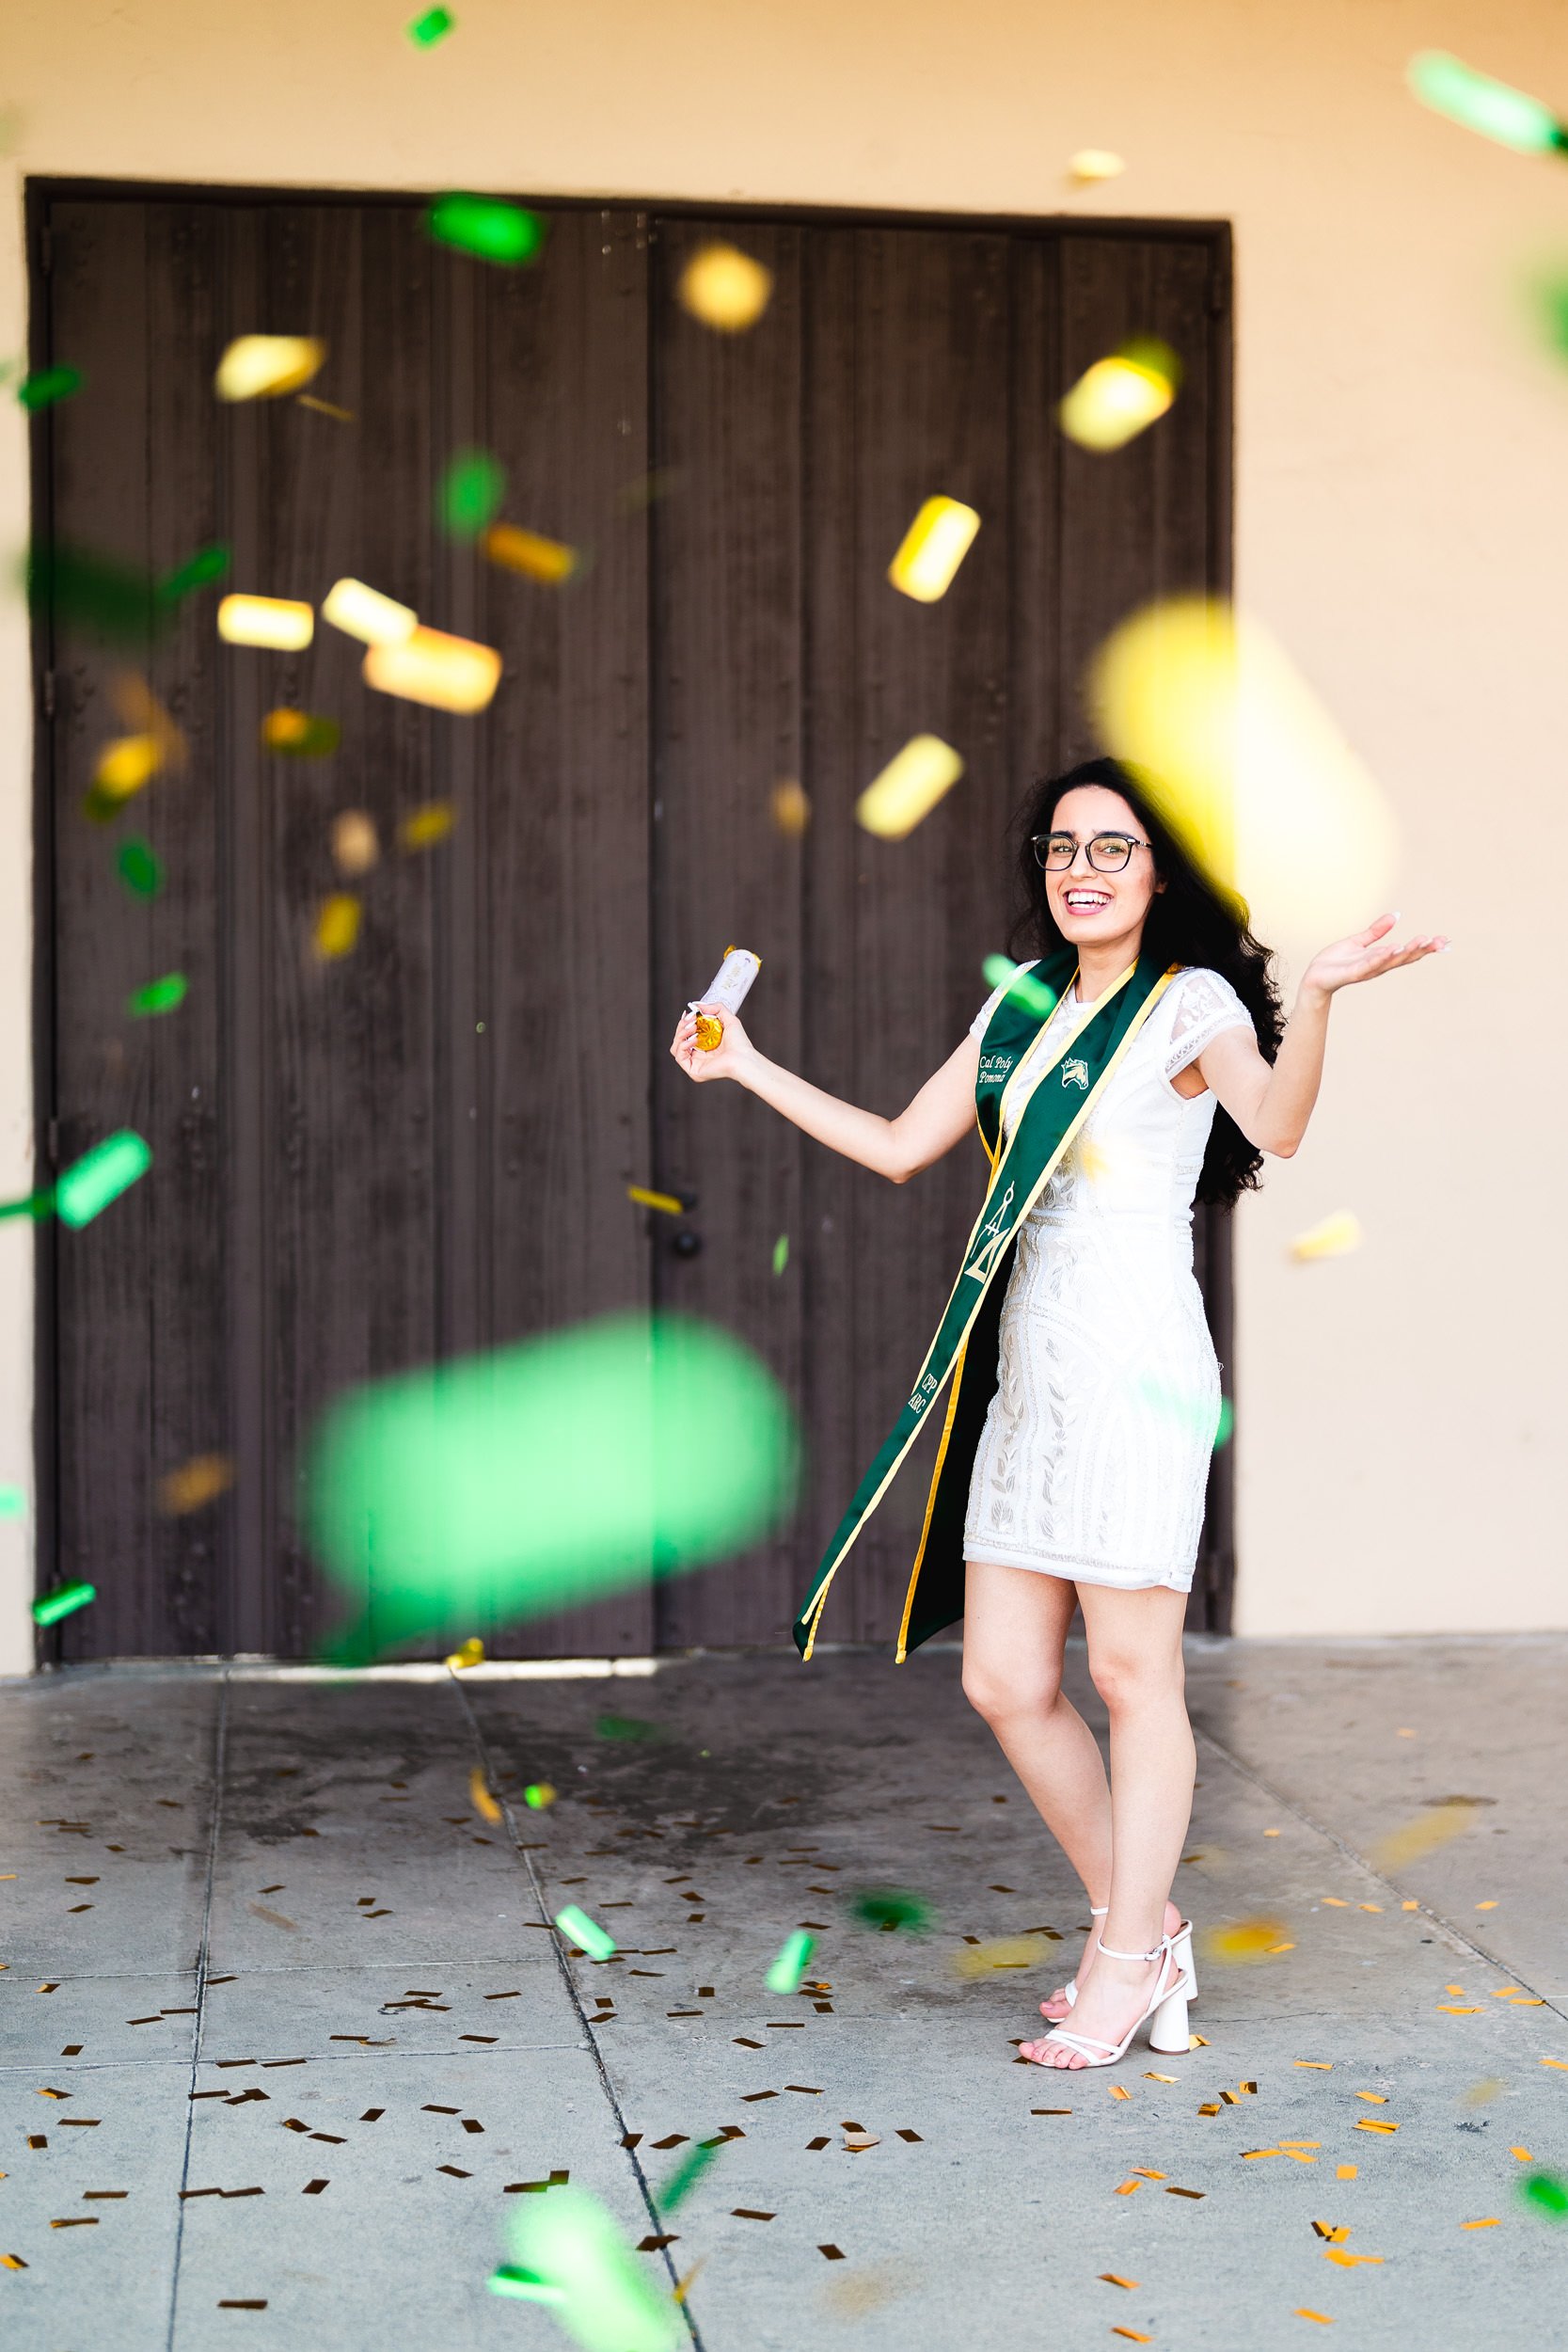 Fun graduation portrait with confetti at Cal Poly Pomona